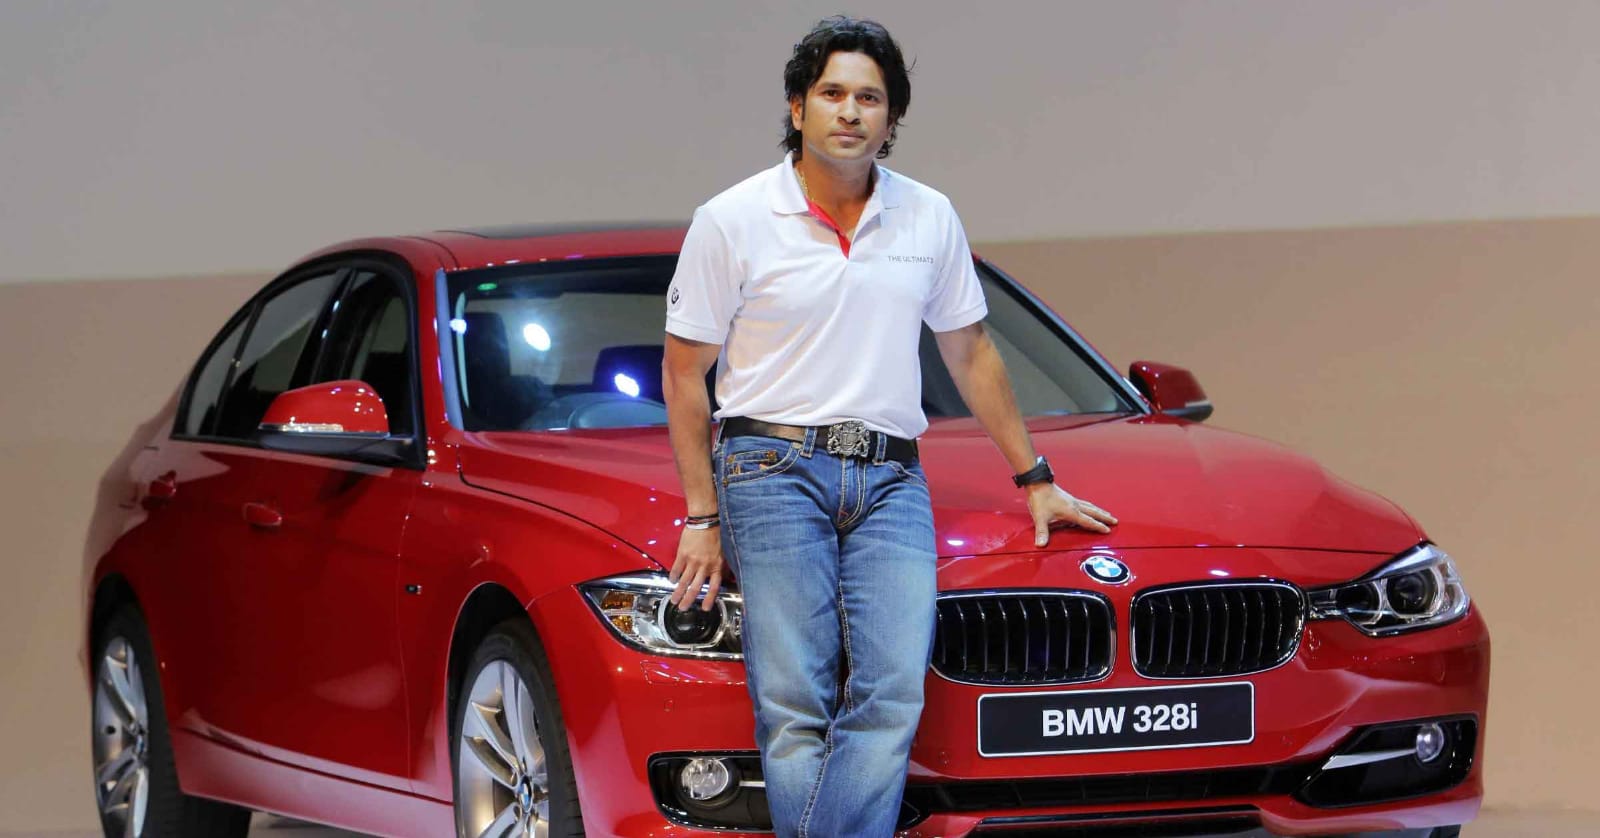 Indian Cricketers Car: विराट कोहली से लेकर एमएस धोनी तक...5 भारतीय खिलाड़ी जो रखते है महंगी कार- Check Out